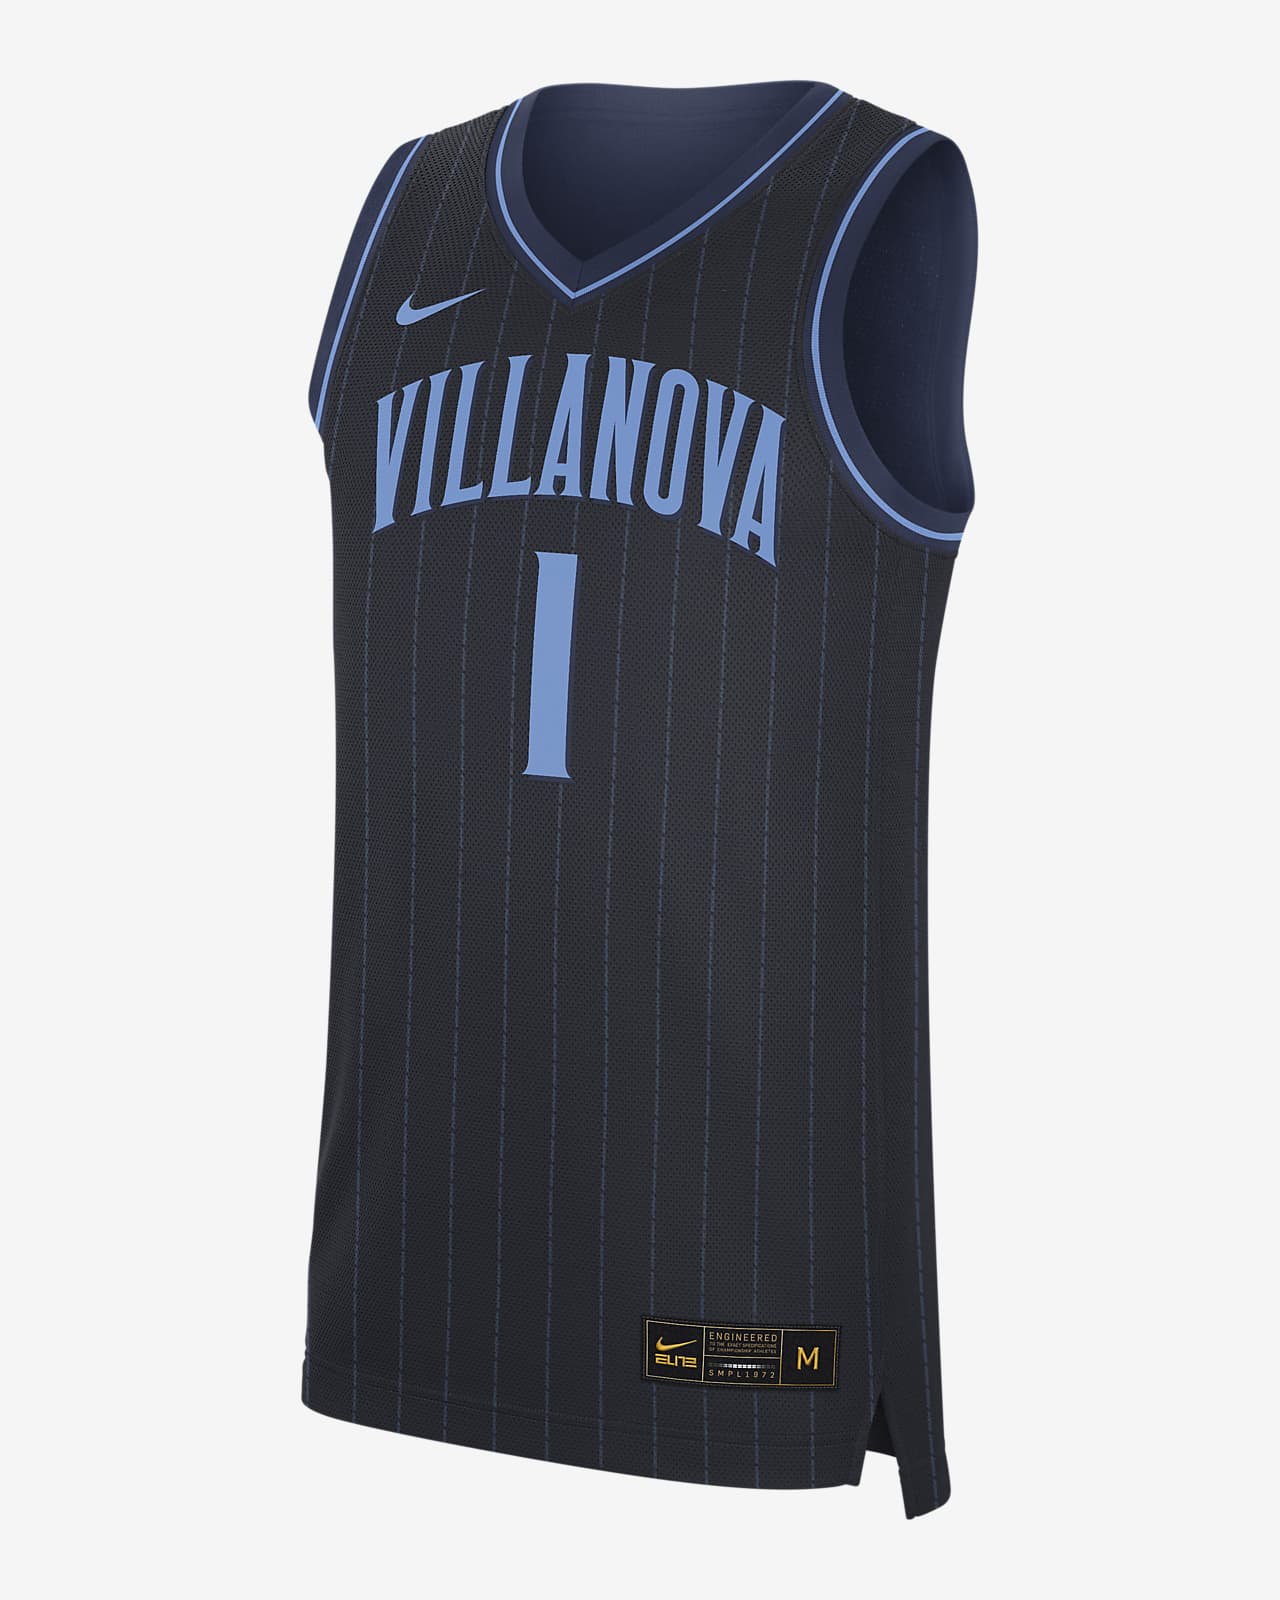 Nike College Dri-FIT (Villanova) Men's Replica Basketball Jersey